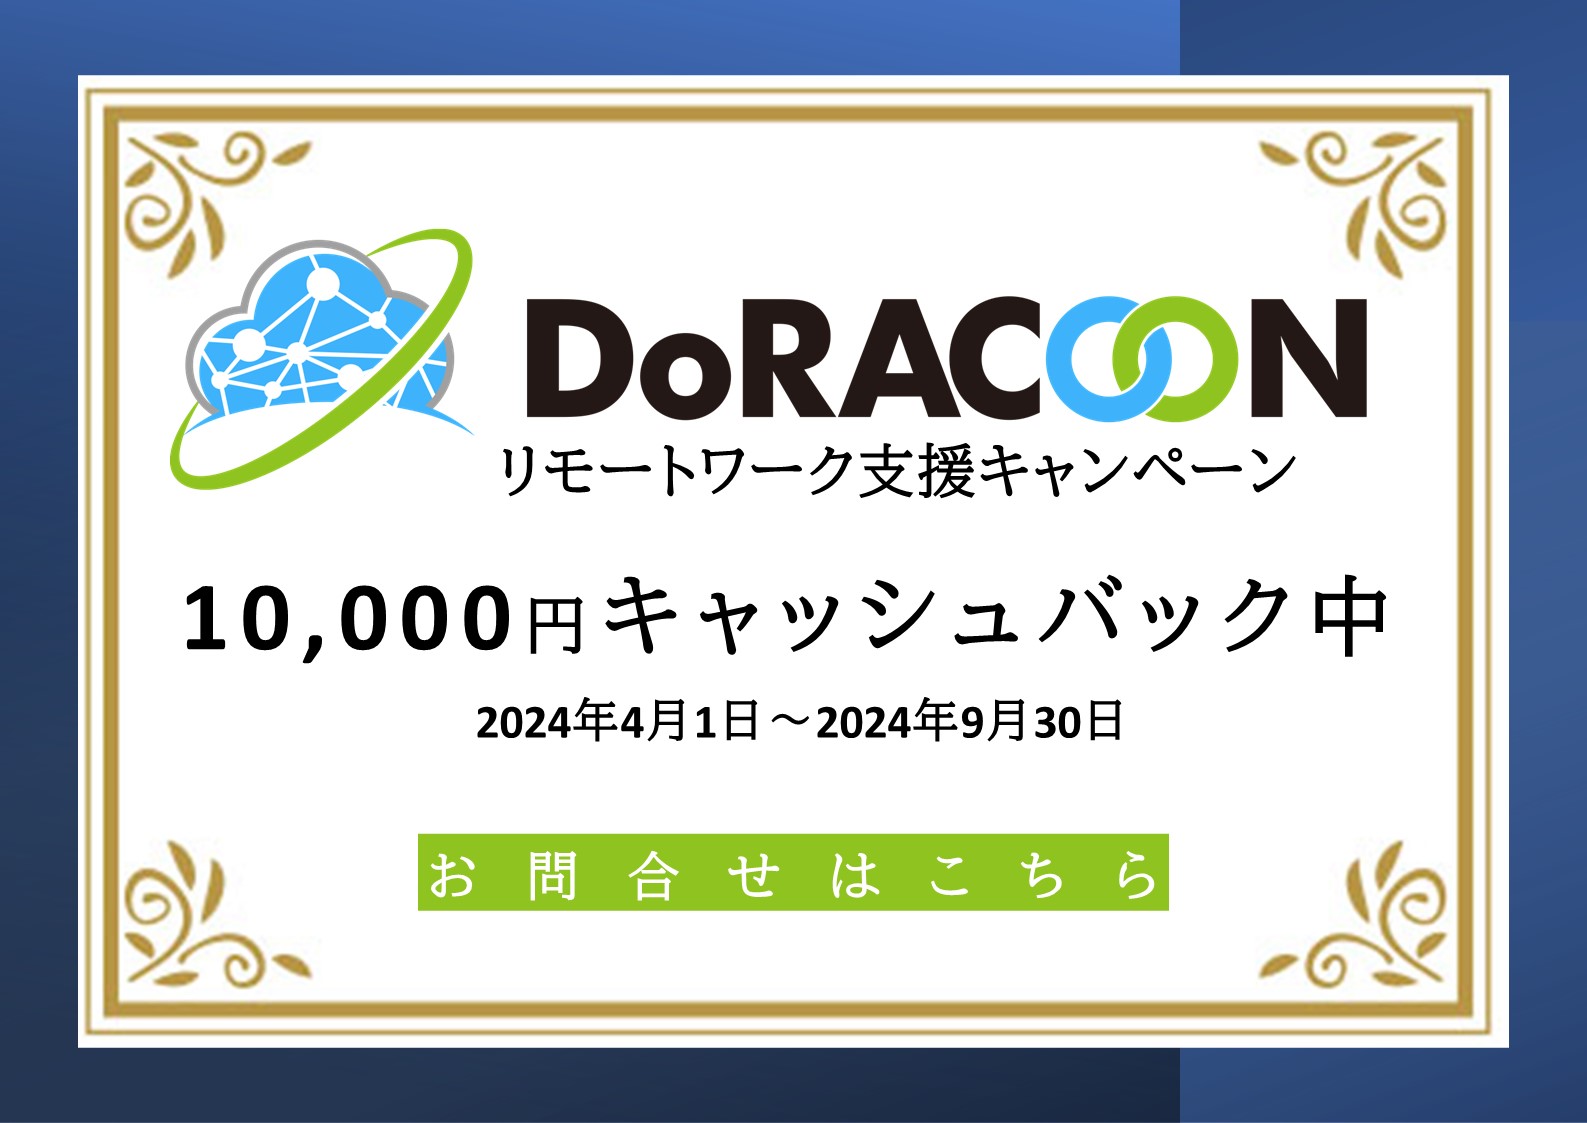 DoRACOONリモートワーク支援キャンペーン 10,000円キャッシュバック中